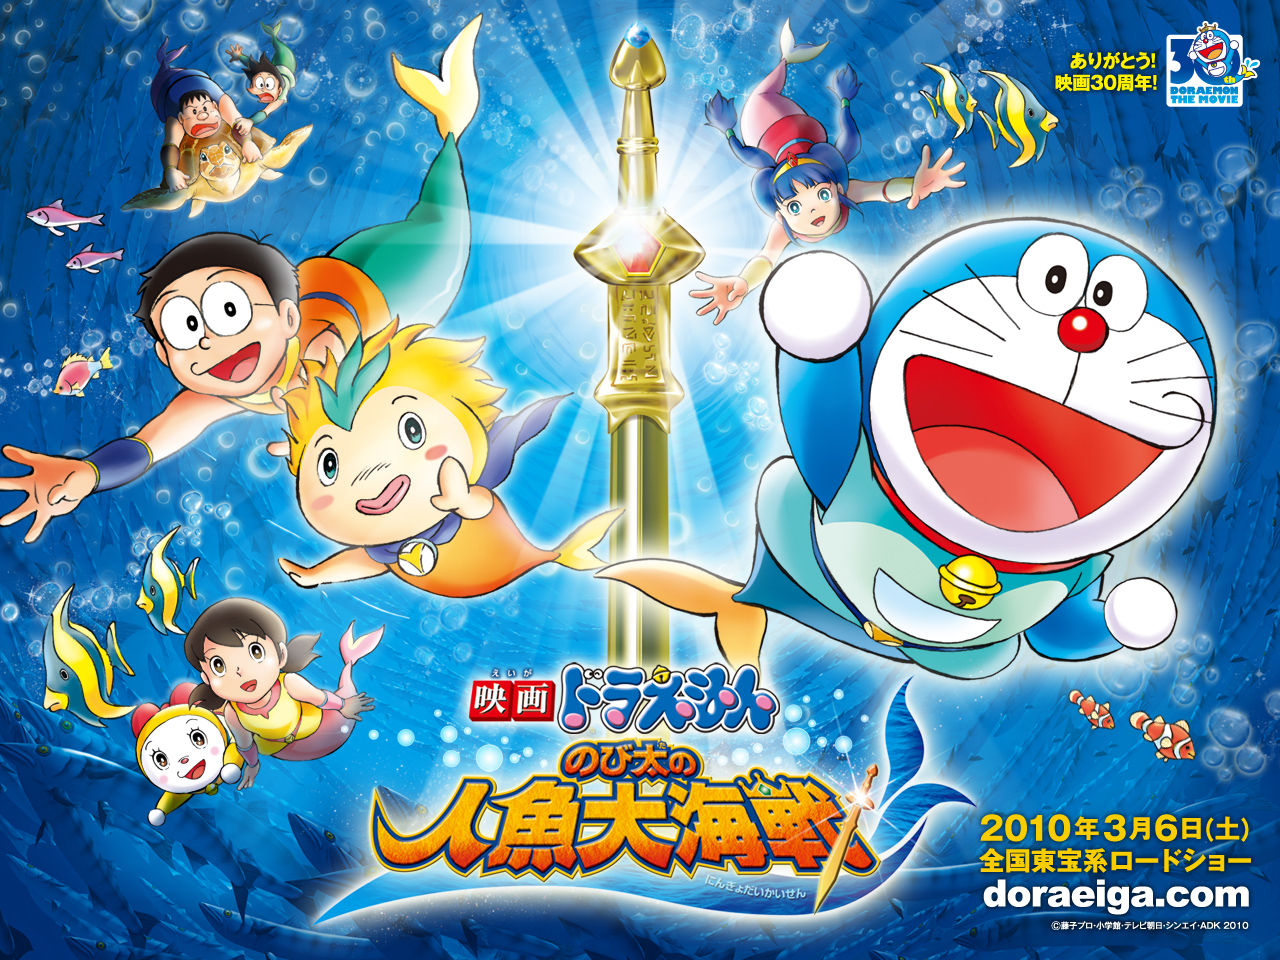 Belajar Dari Film Doraemon